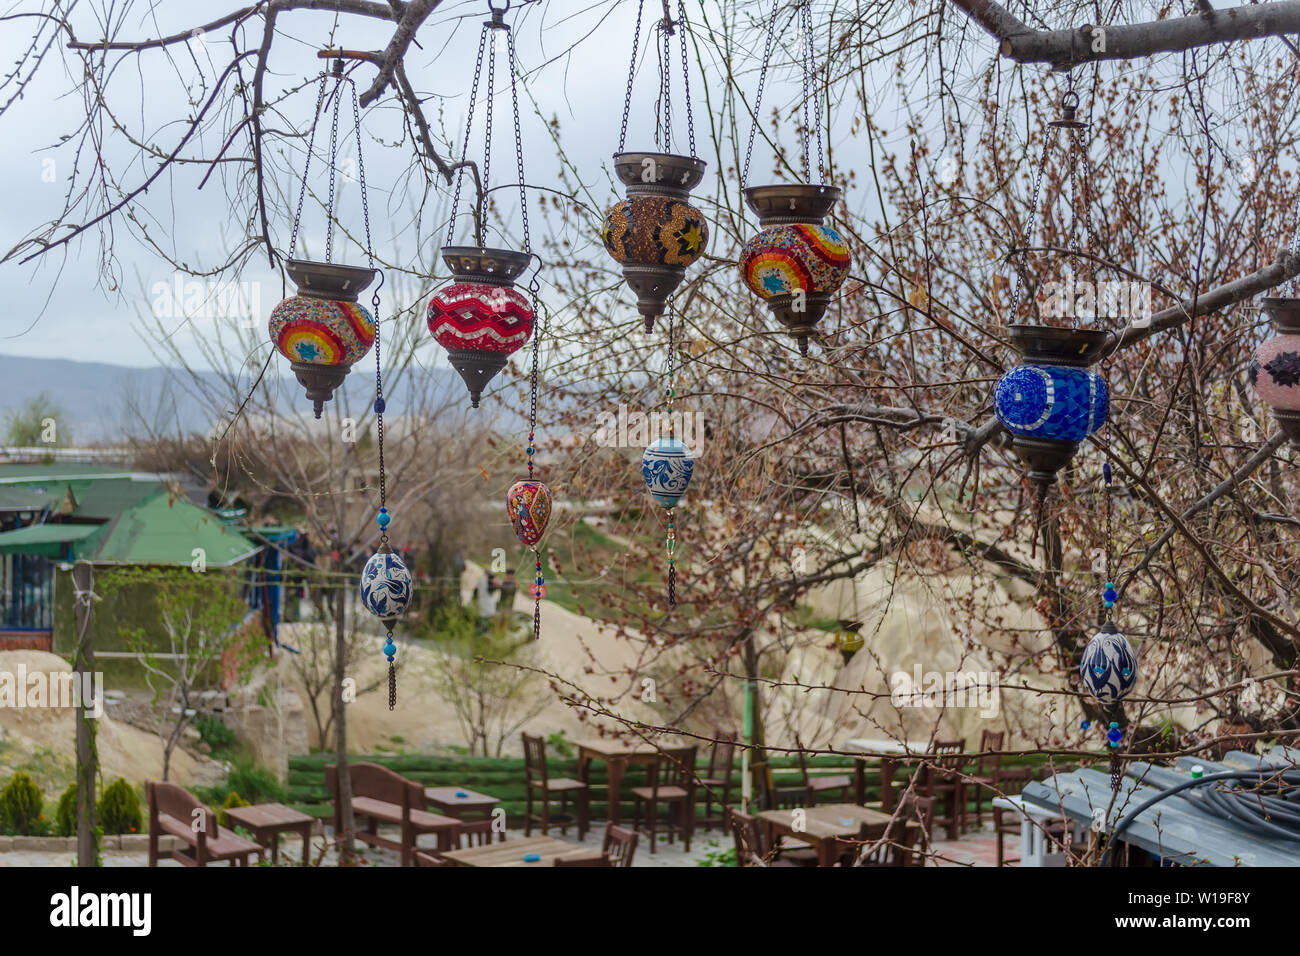 Artesanal de vidrio coloreado tradicional turco luces en las ramas de un árbol cerca. A comienzos de la primavera, la preparación para la temporada turística de Capadocia. Foto de stock